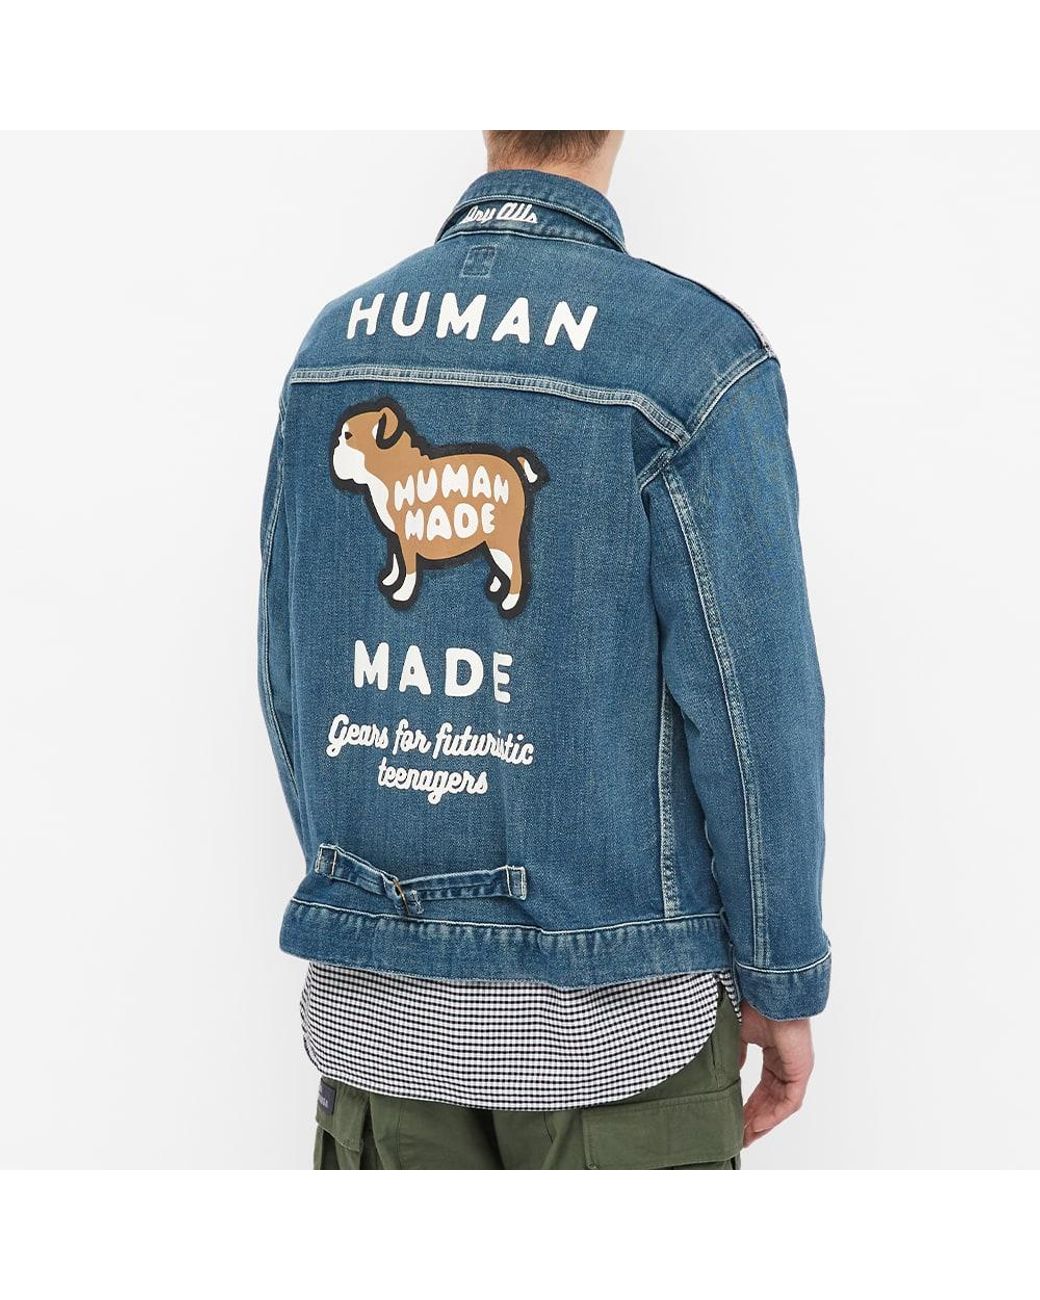 HUMAN MADE HUMAN MADE HUMAN MADE Denim Coverall Jacket Indigo XL